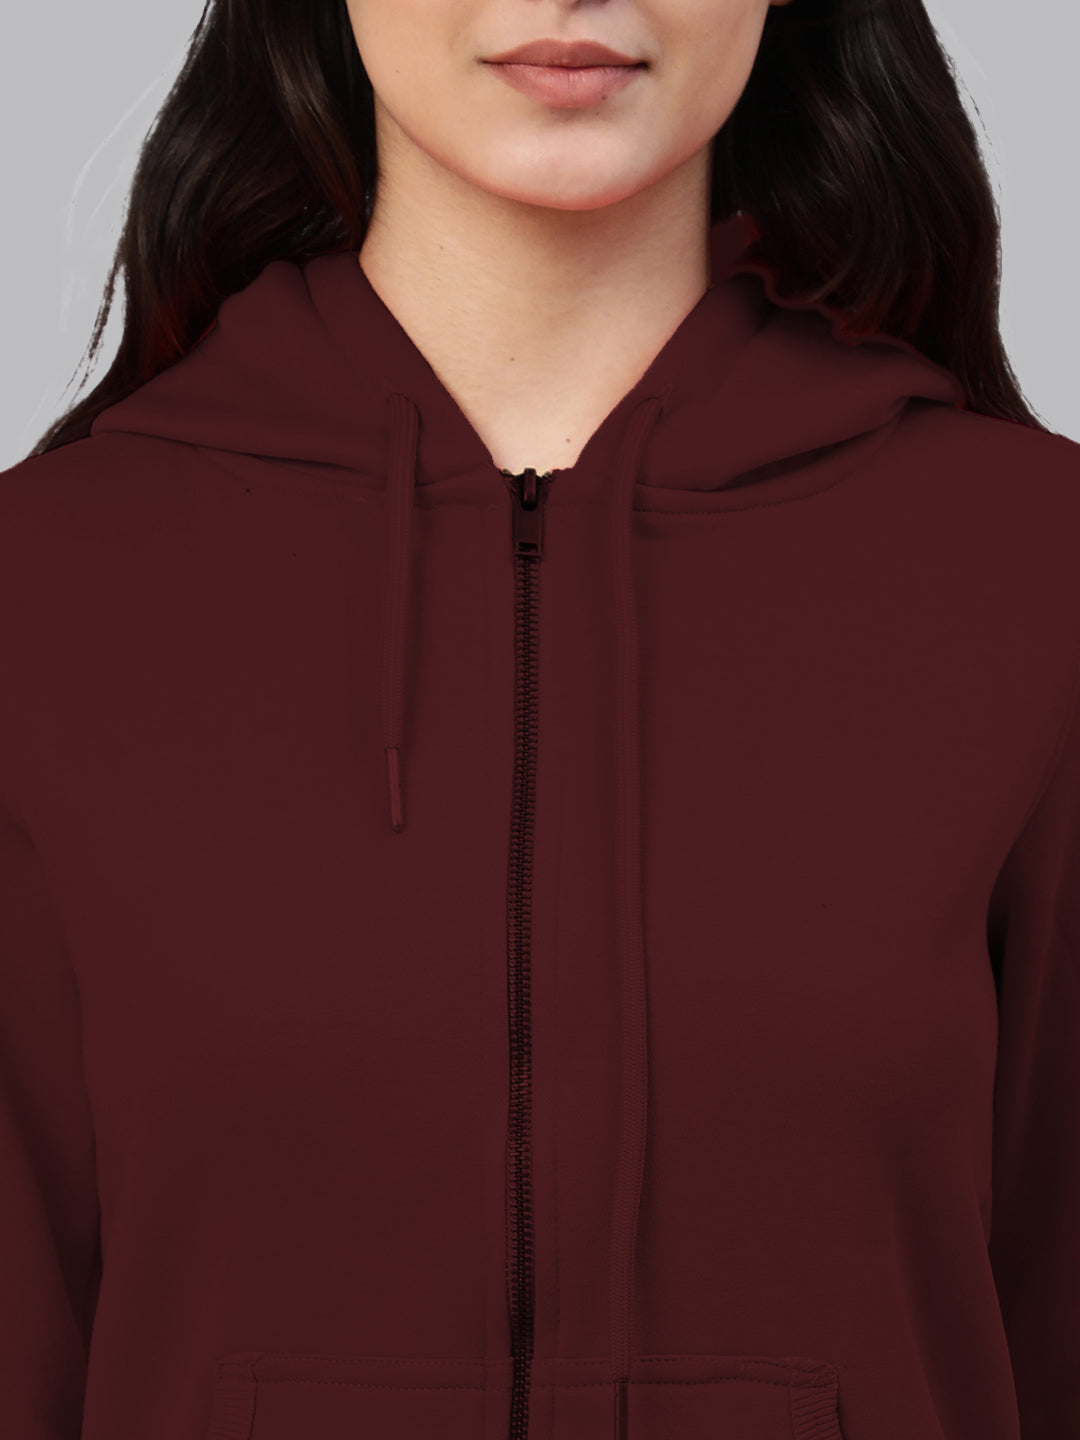 Maroon zipper hoodie jacket